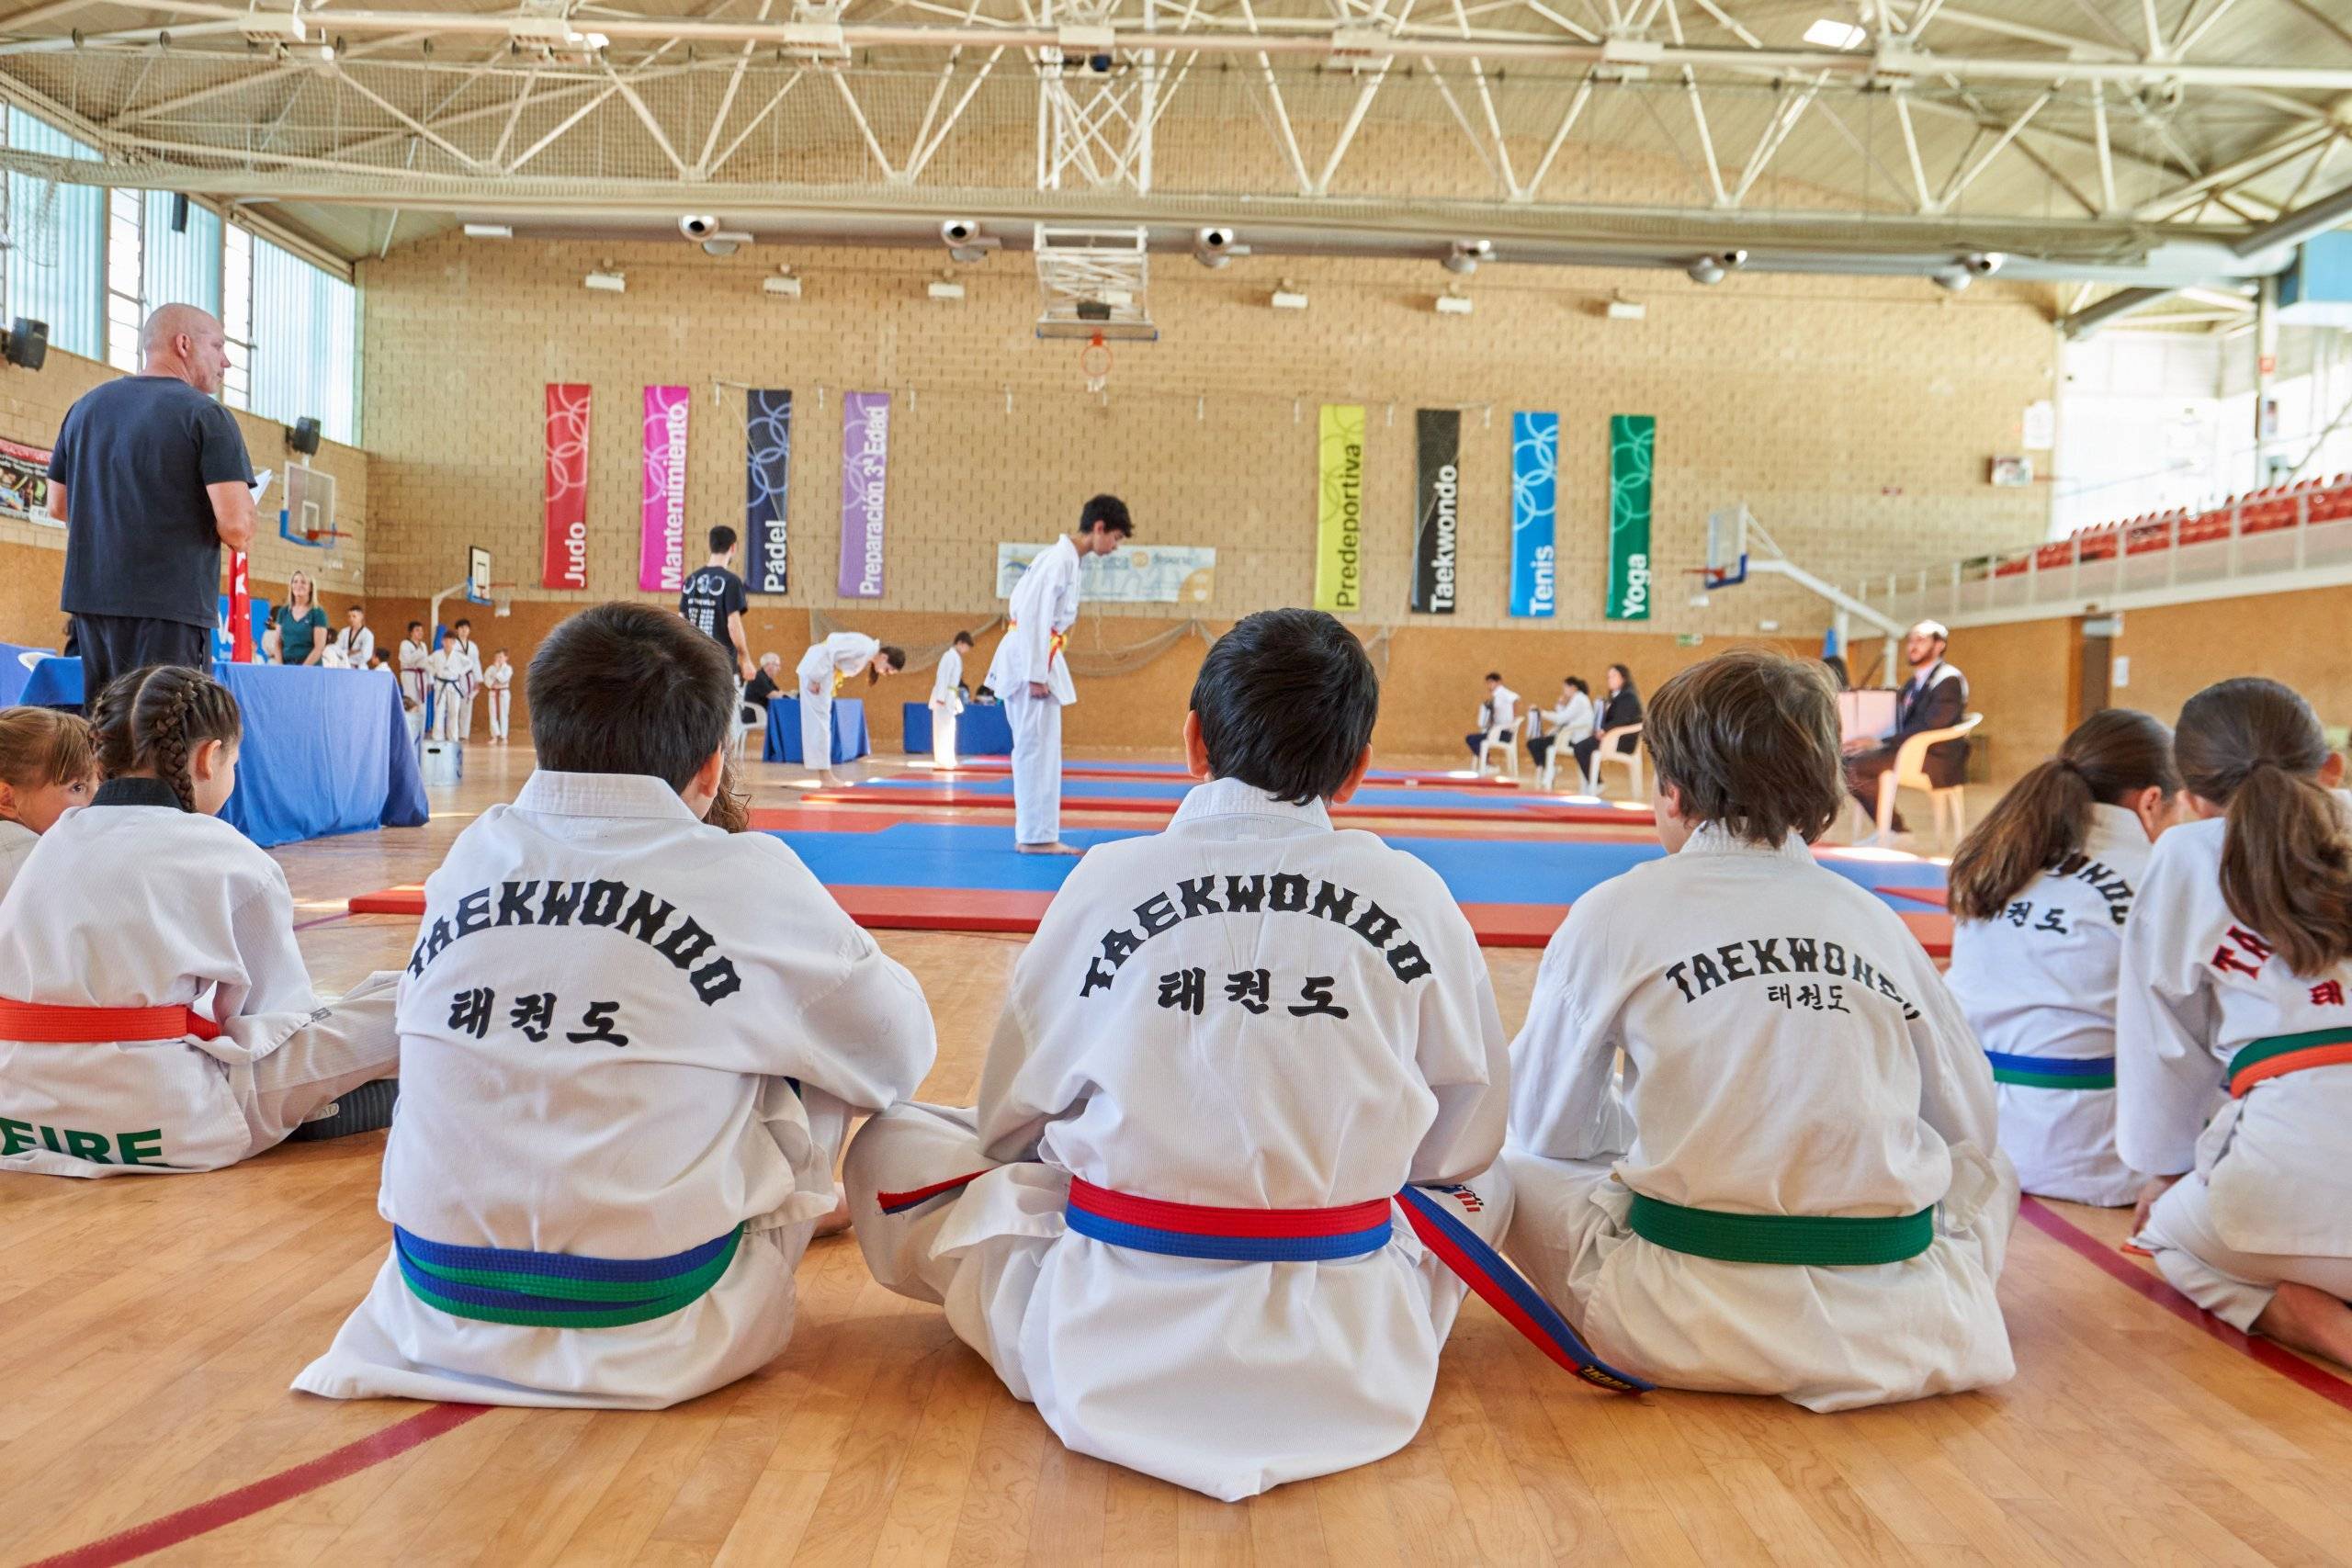 Participantes del Campeonato de Taekwondo mirando a otros deportistas mientras realizan su ejercicio.